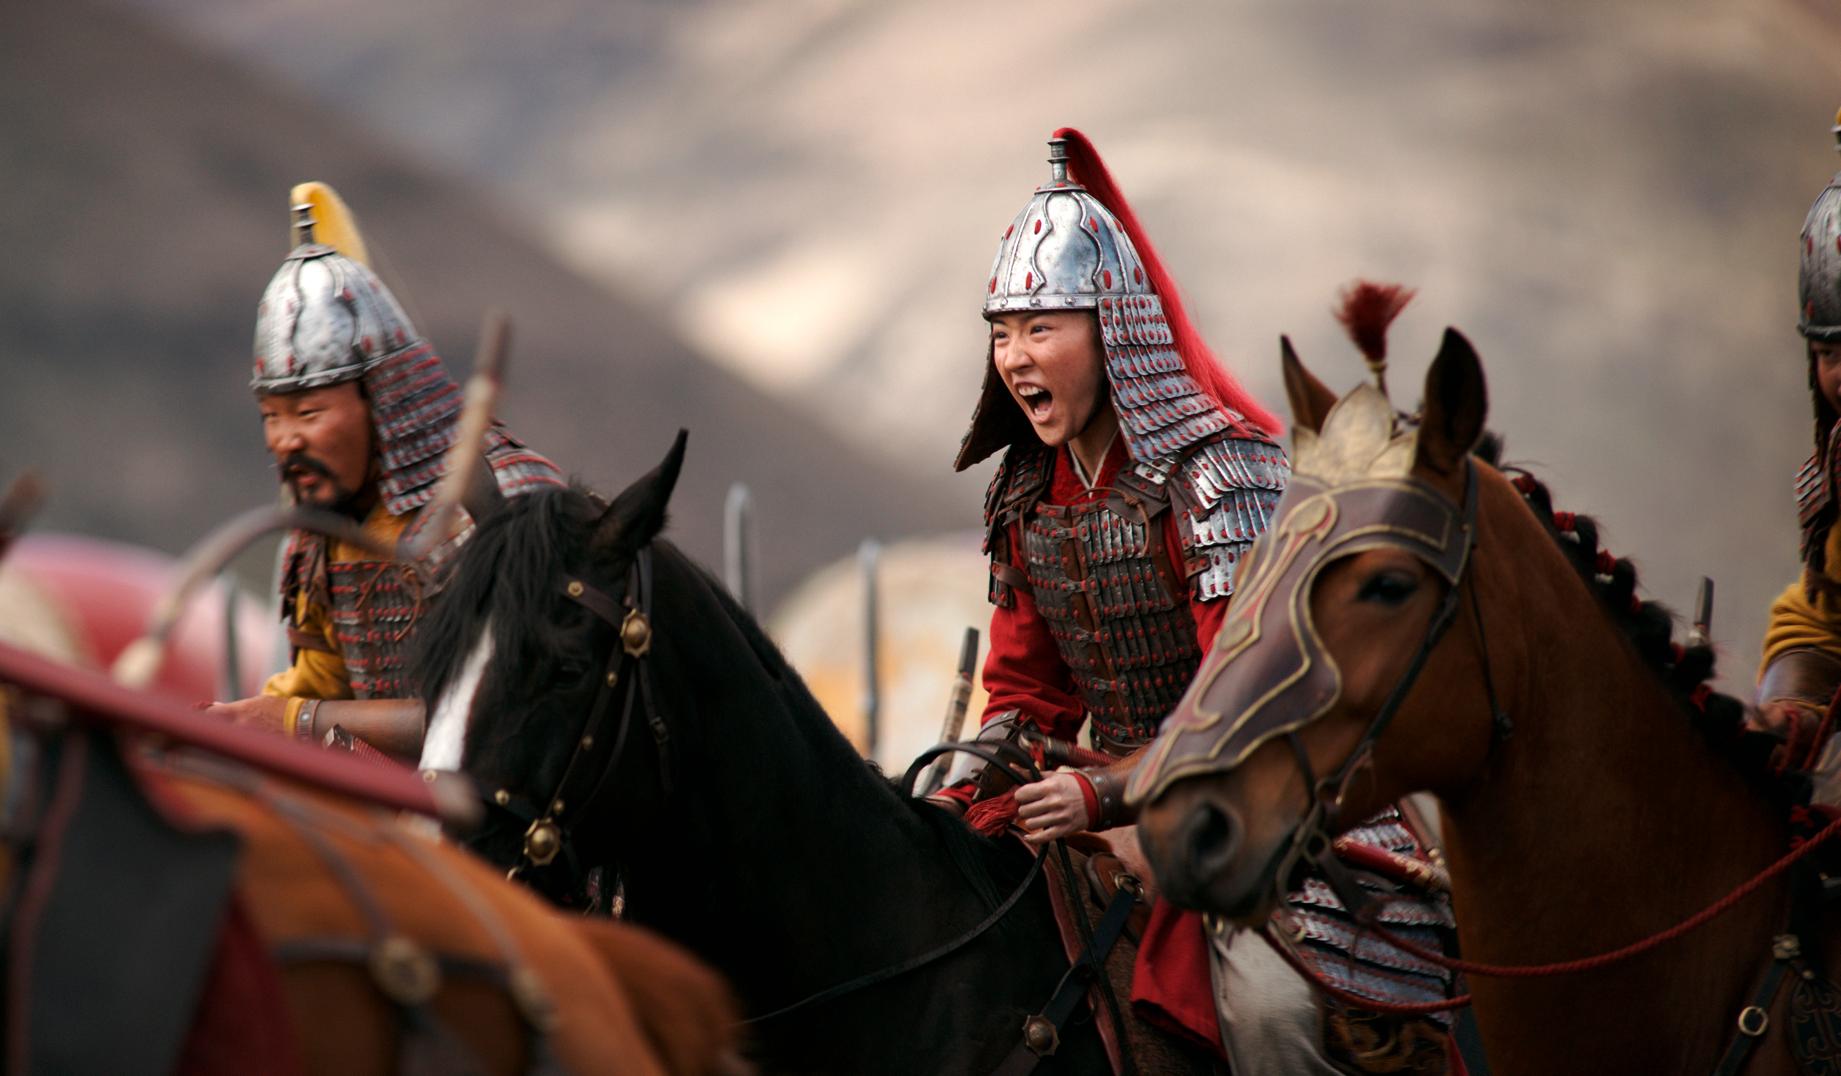 Den nya filmversionen av "Mulan" är mer av en realistisk krigsfilm än den gamla animerade. Yifei Liu spelar huvudrollen i filmen. Arkivbild.